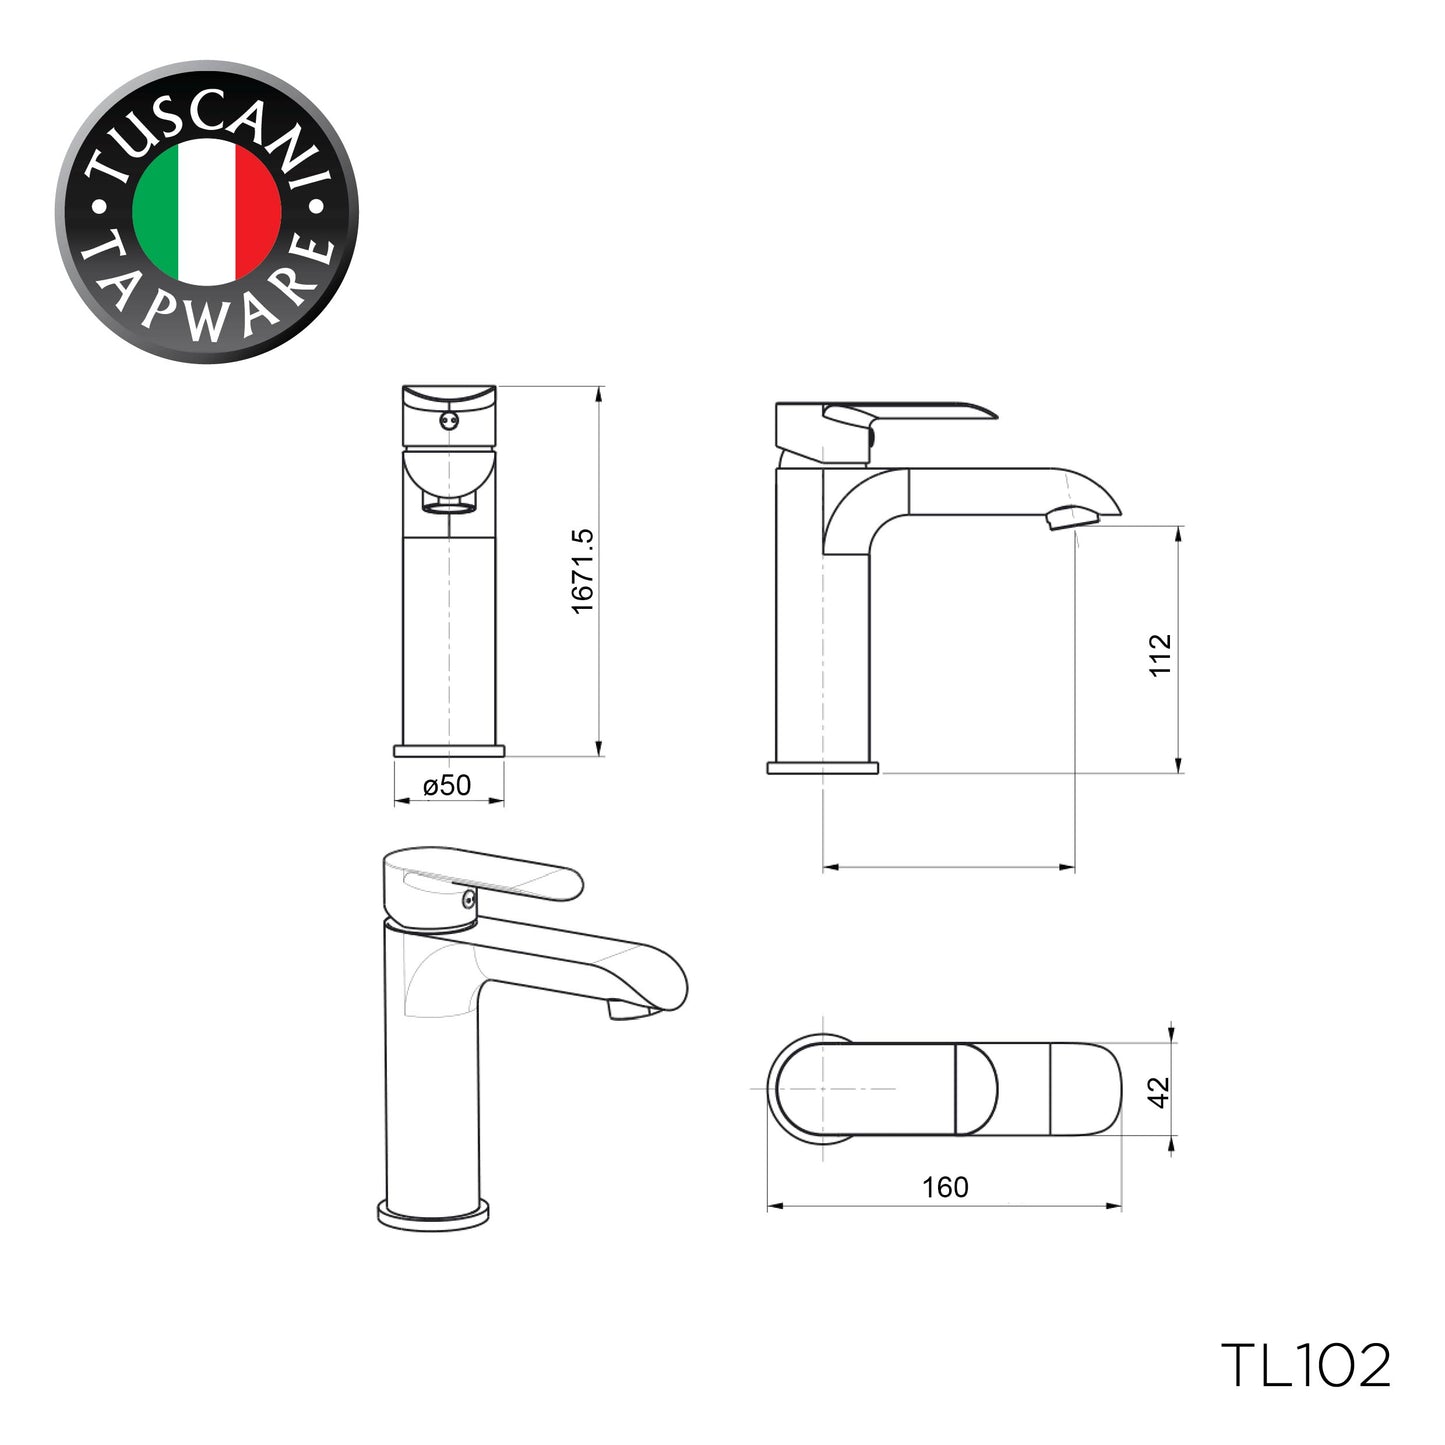 TL102 - Lavanzi Series Basin Mixer